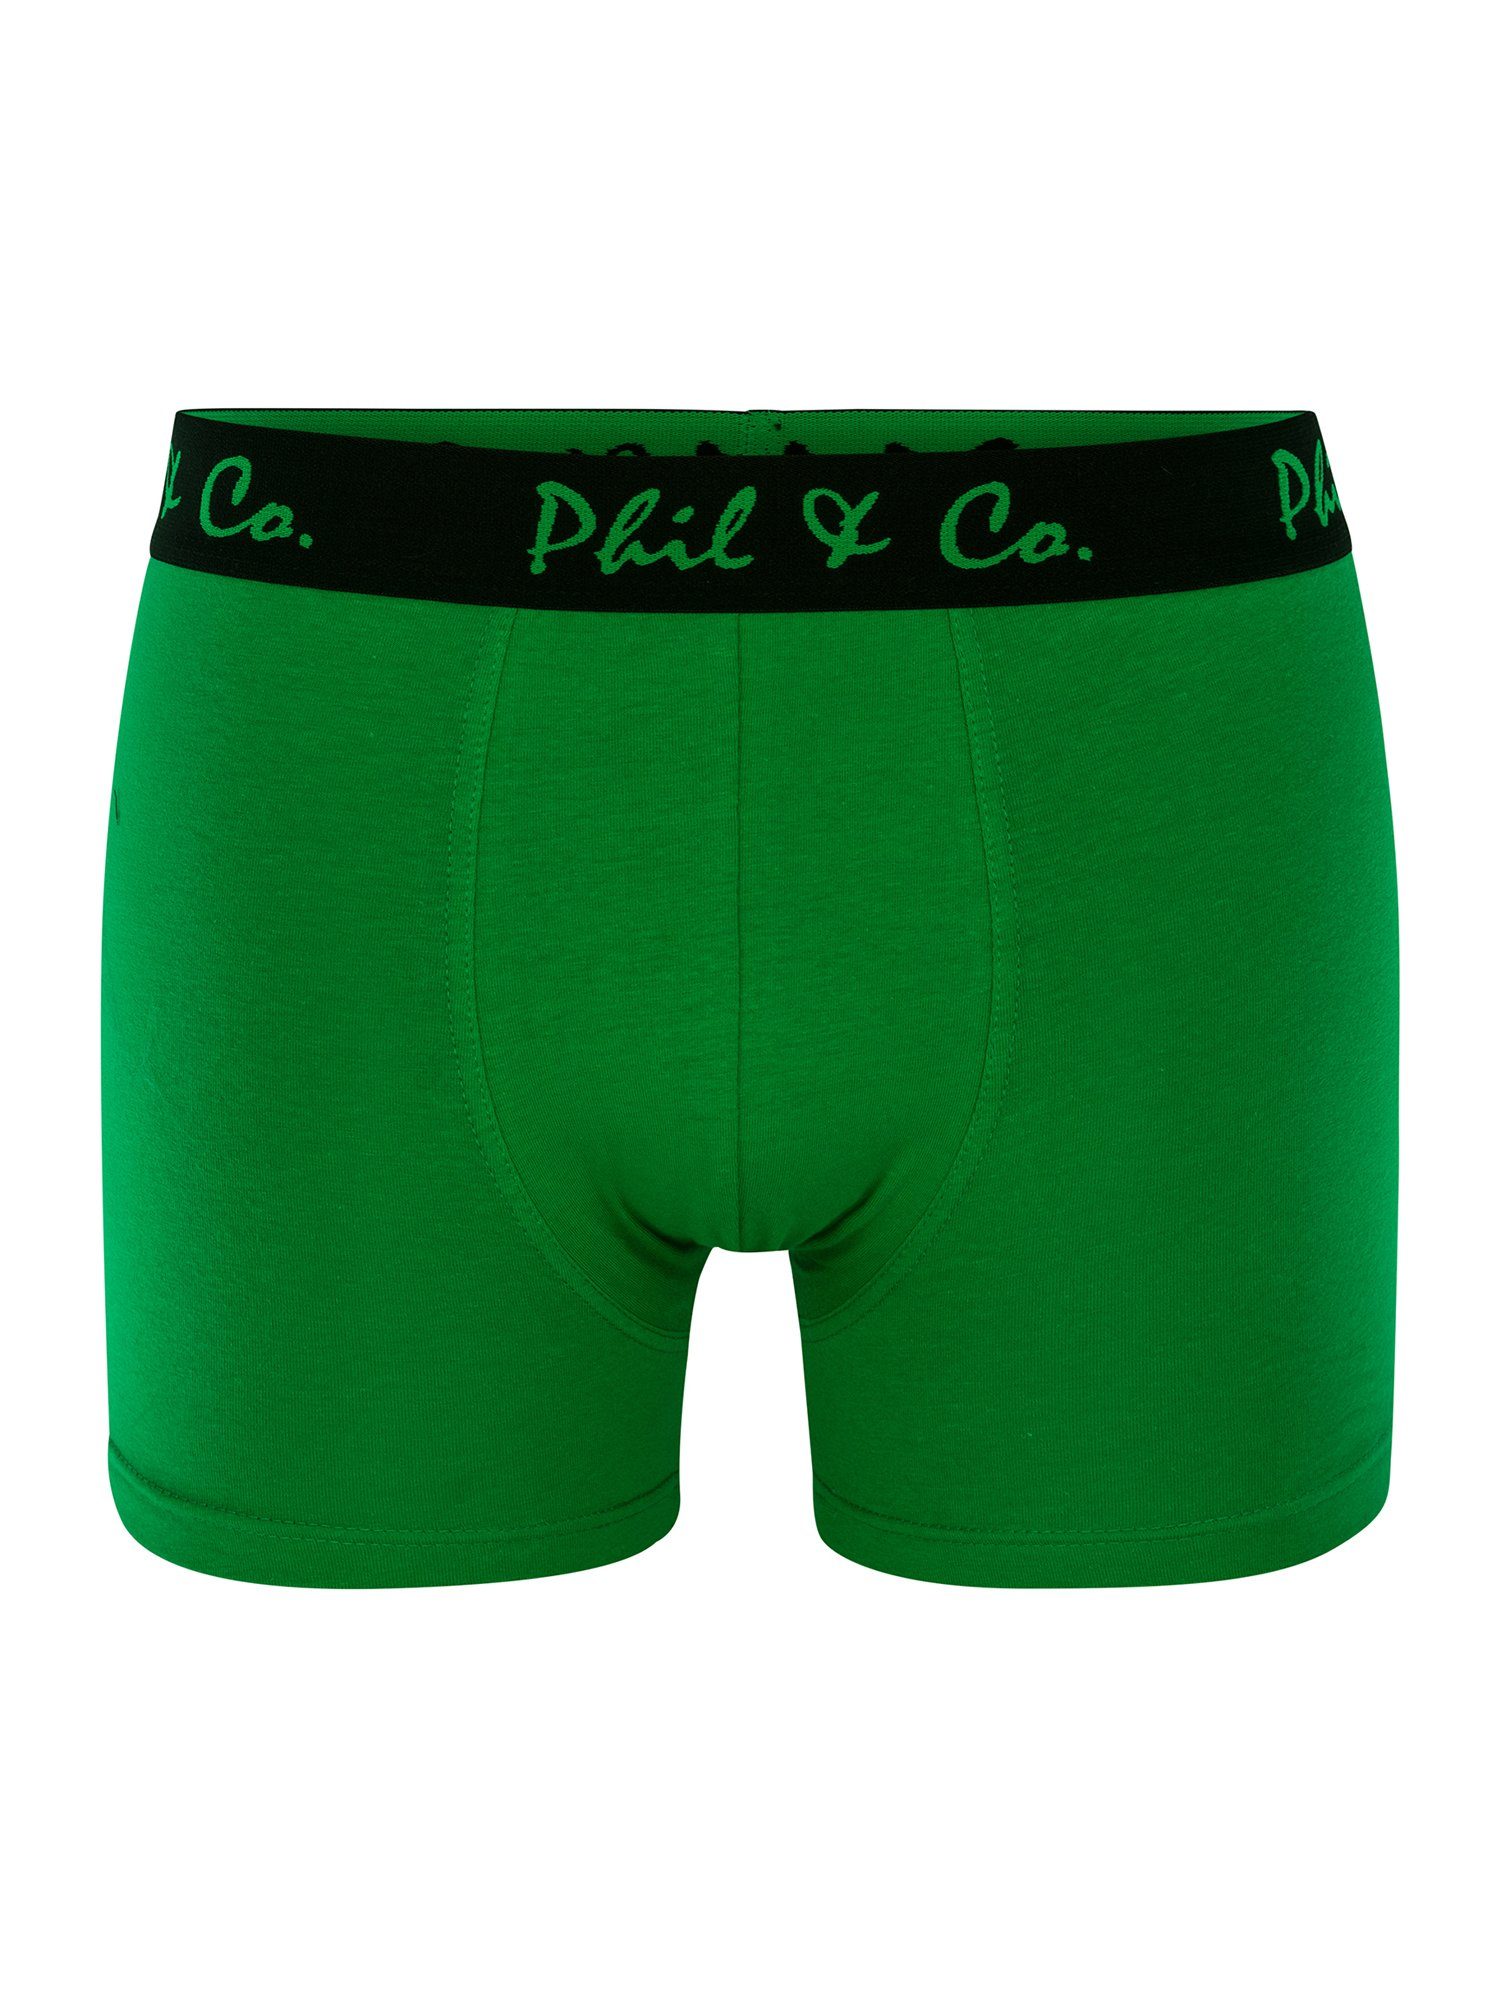 Phil & (4-St) Co. Jersey Retro grün-anthrazit Pants